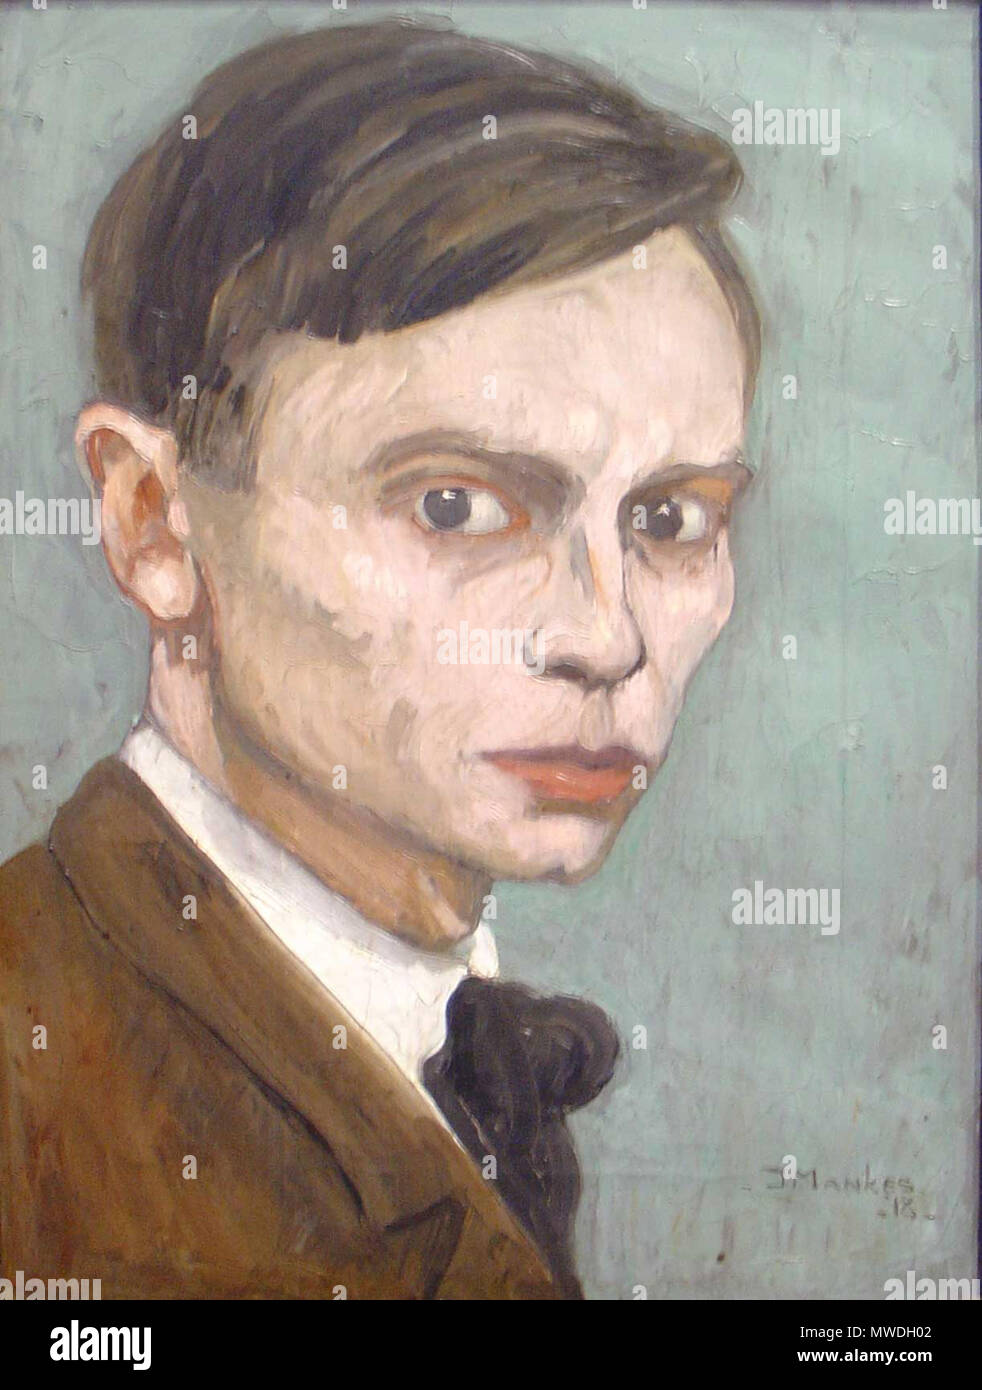 . Nederlands: Zelfportret van Jan Mankes inglese: autoritratto di Jan Mankes . 1918. Gouwenaar 308 Jan Mankes zelfportret Foto Stock